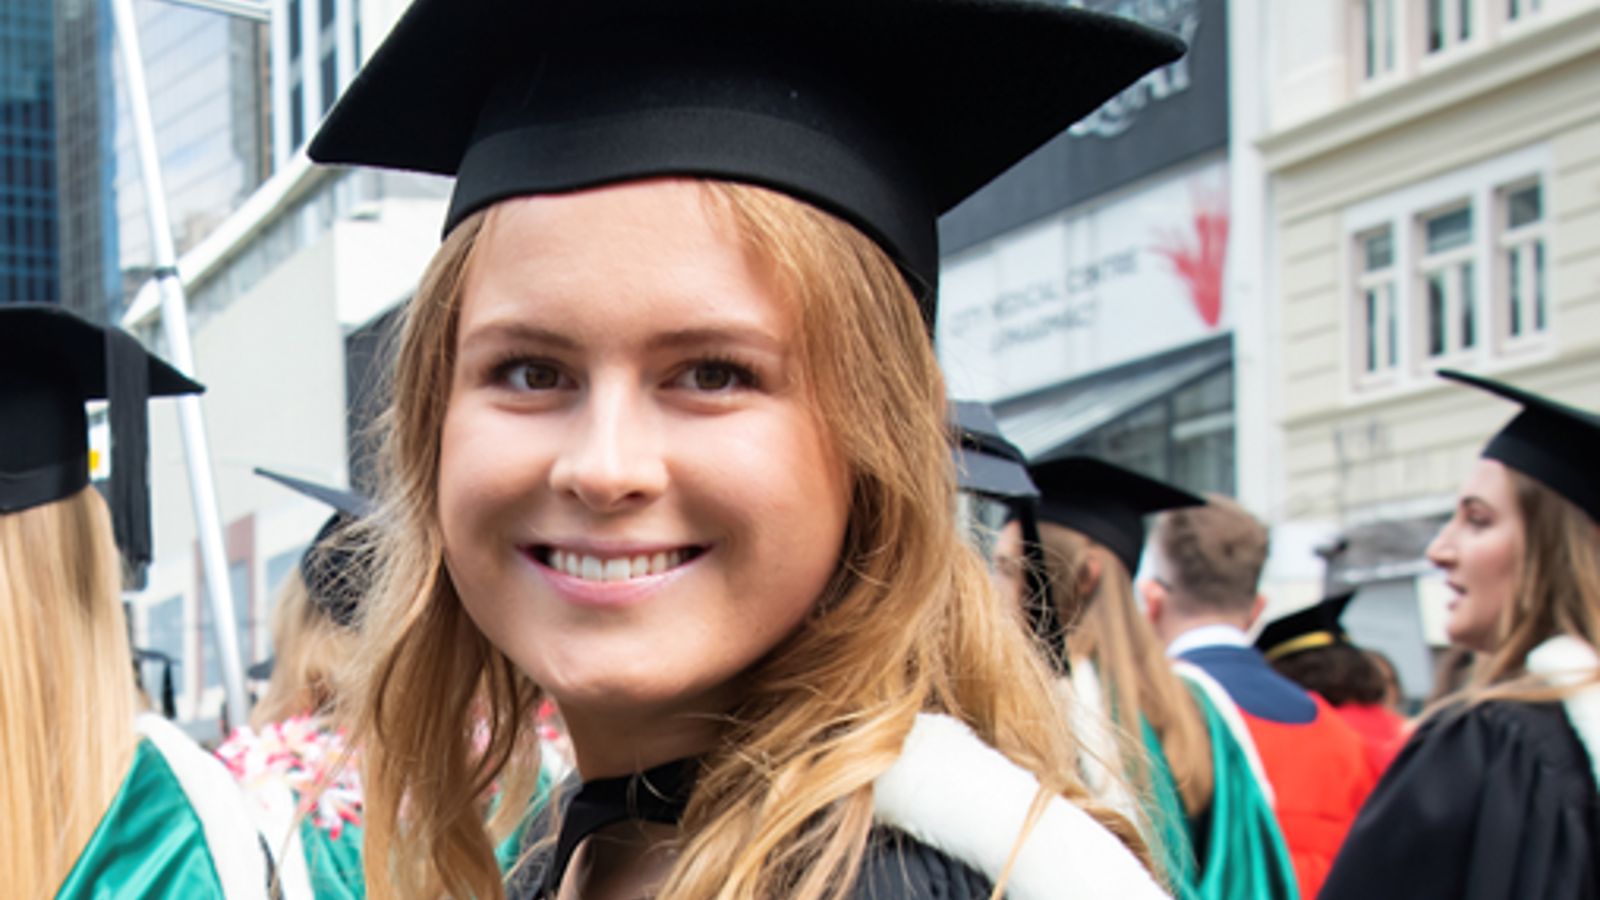 Woman smiling in graduation cap